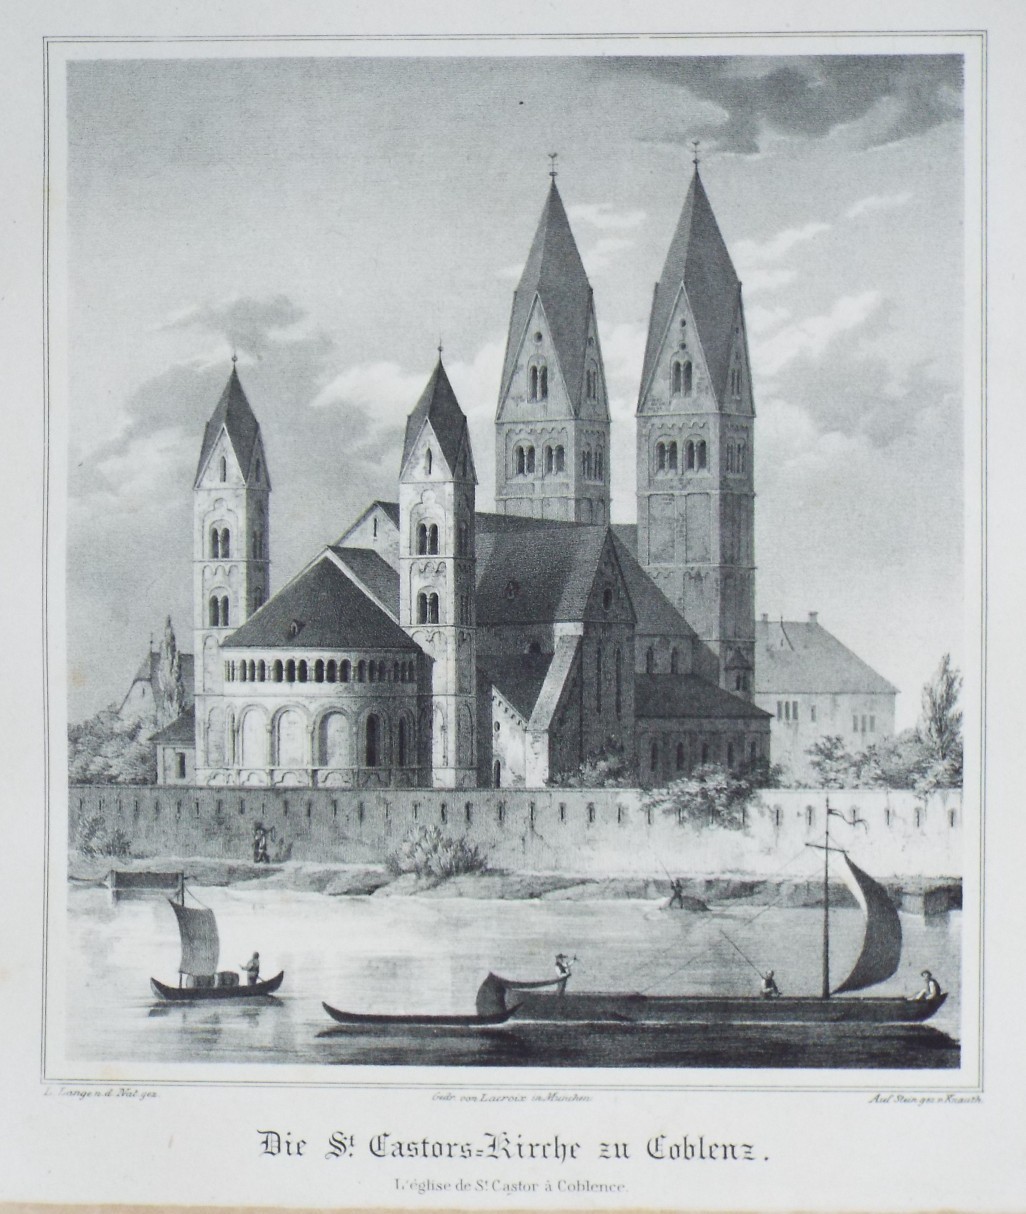 Lithograph - Die St. Castors-Kirche in Coblenz.
L'Eglise St. Castor a Coblence. - 